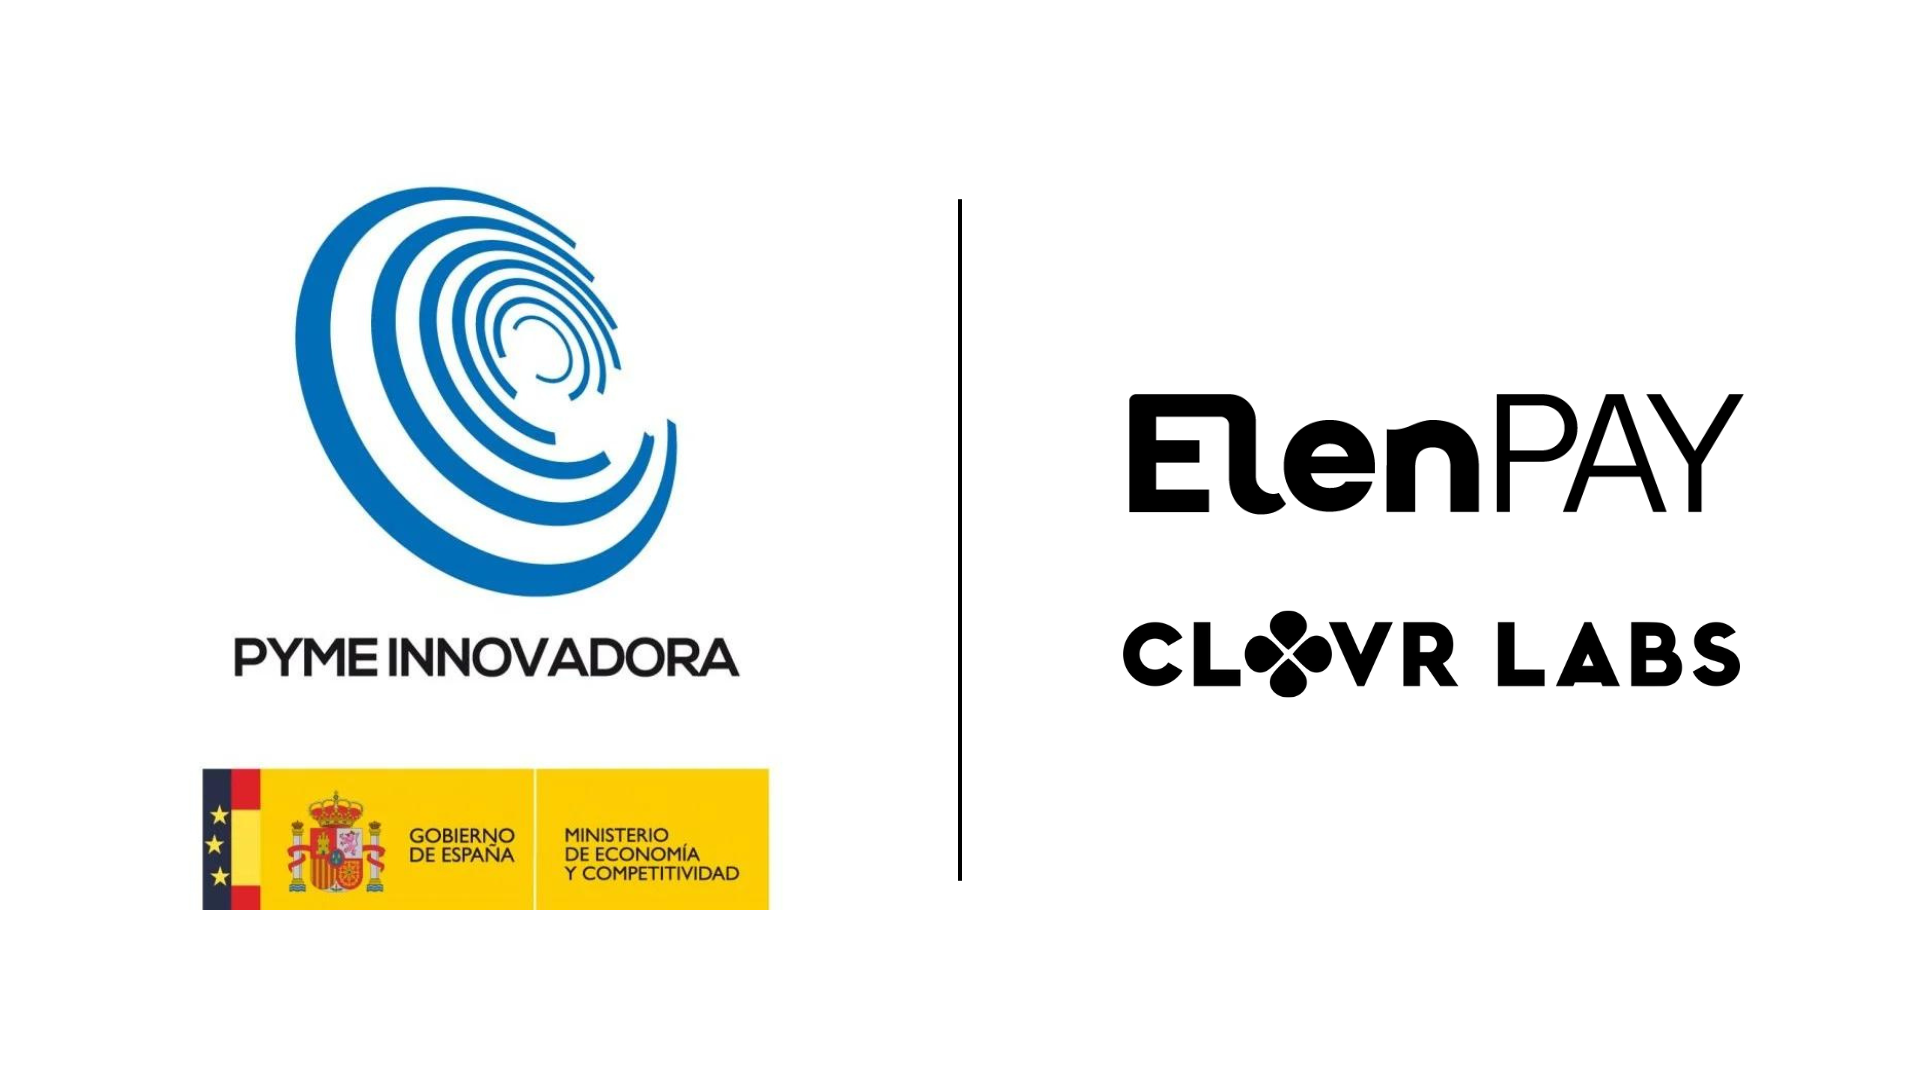 ElenPAY receives the prestigious Innovative PYME label